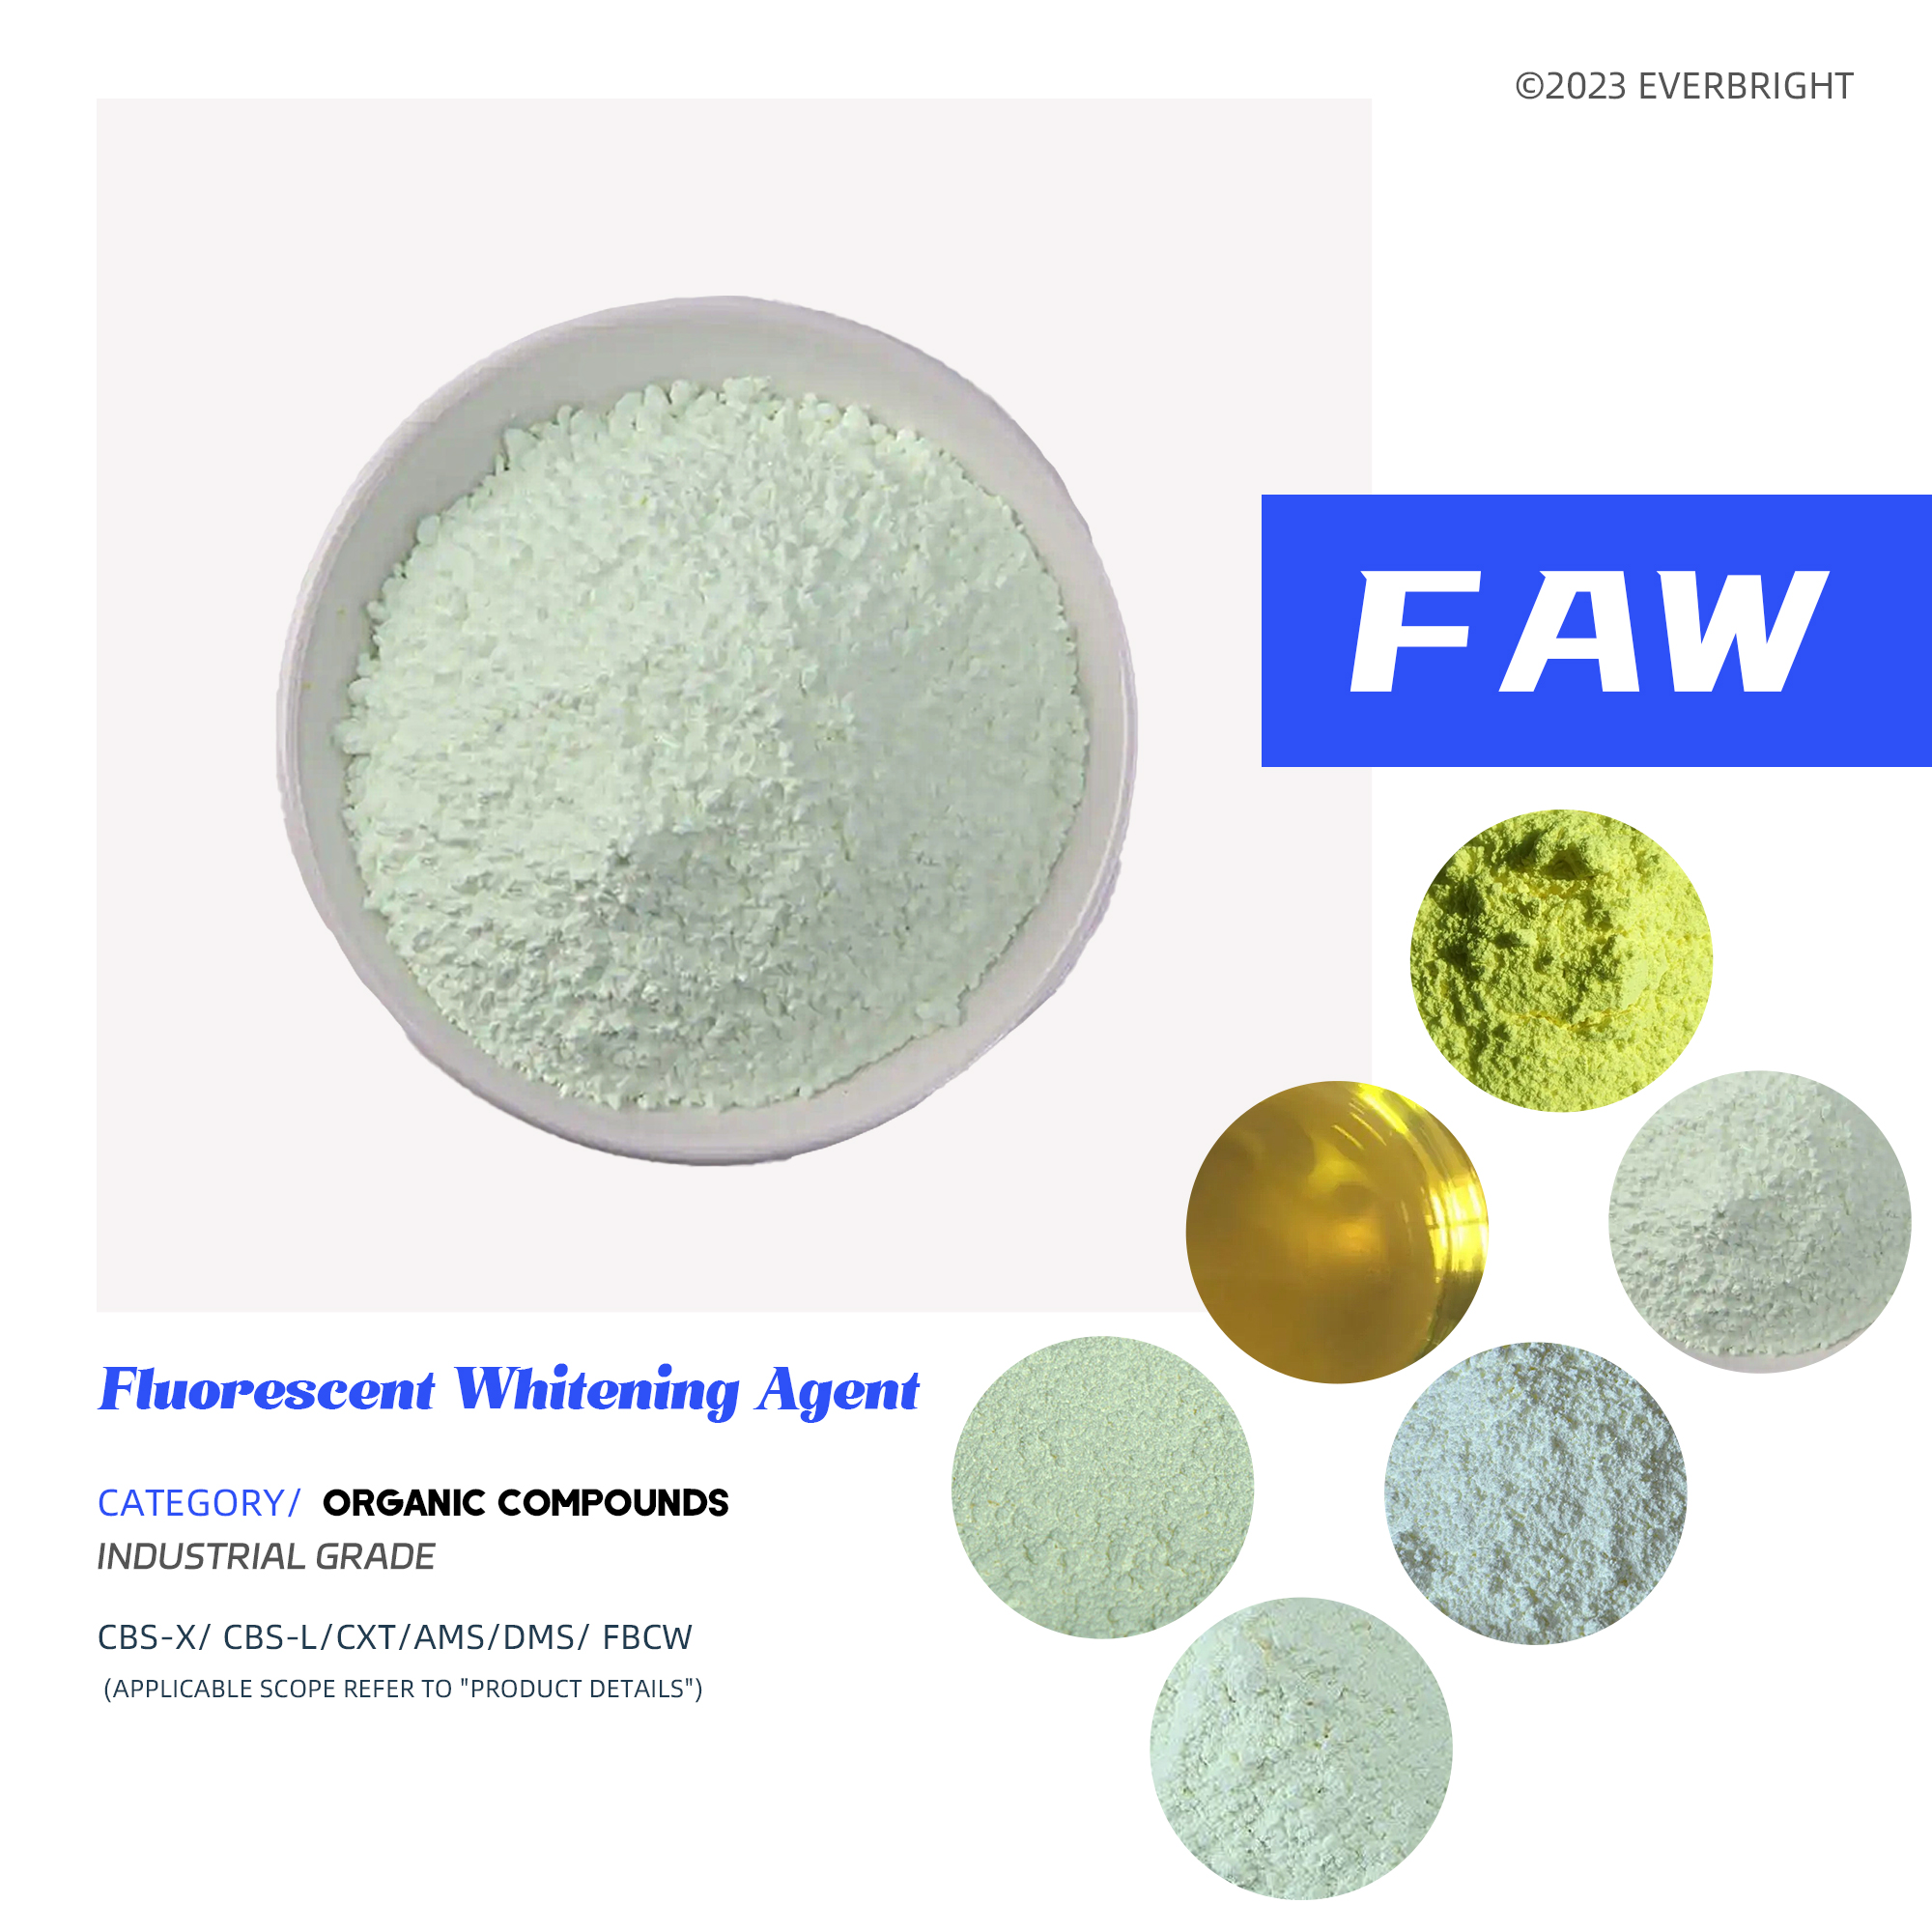 Fluorescenční bělicí činidlo (FWA)